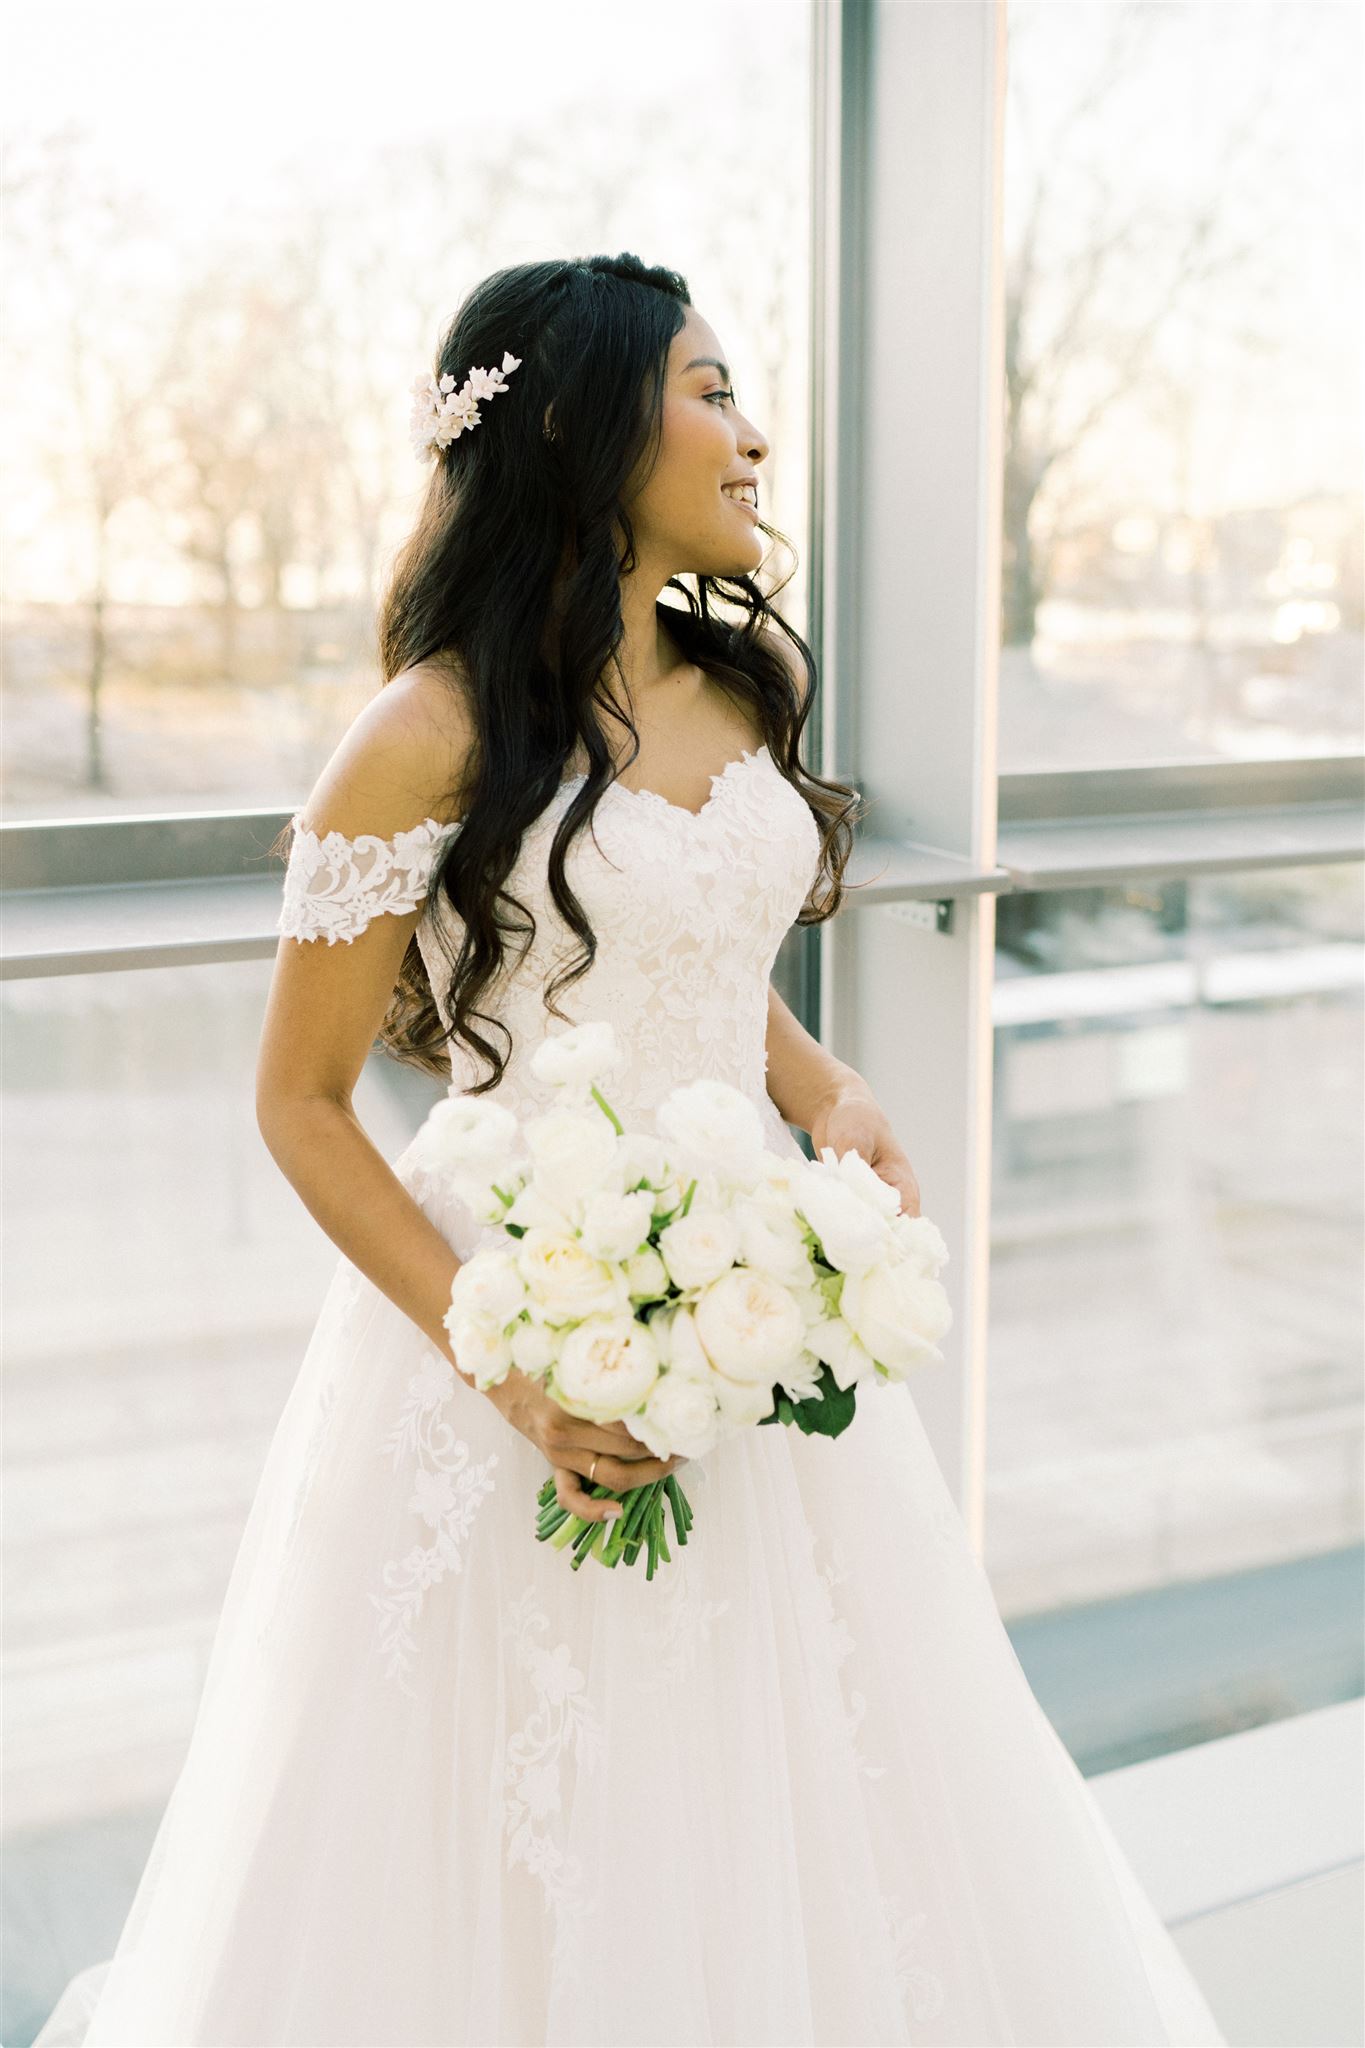 Vakker brud med løst krøllete hår og a-ilnjeformet brudekjole med blonder. Brudebuketten i hånden med vite blomster passer til hvit hodepynt i lyse blomsterfarger.